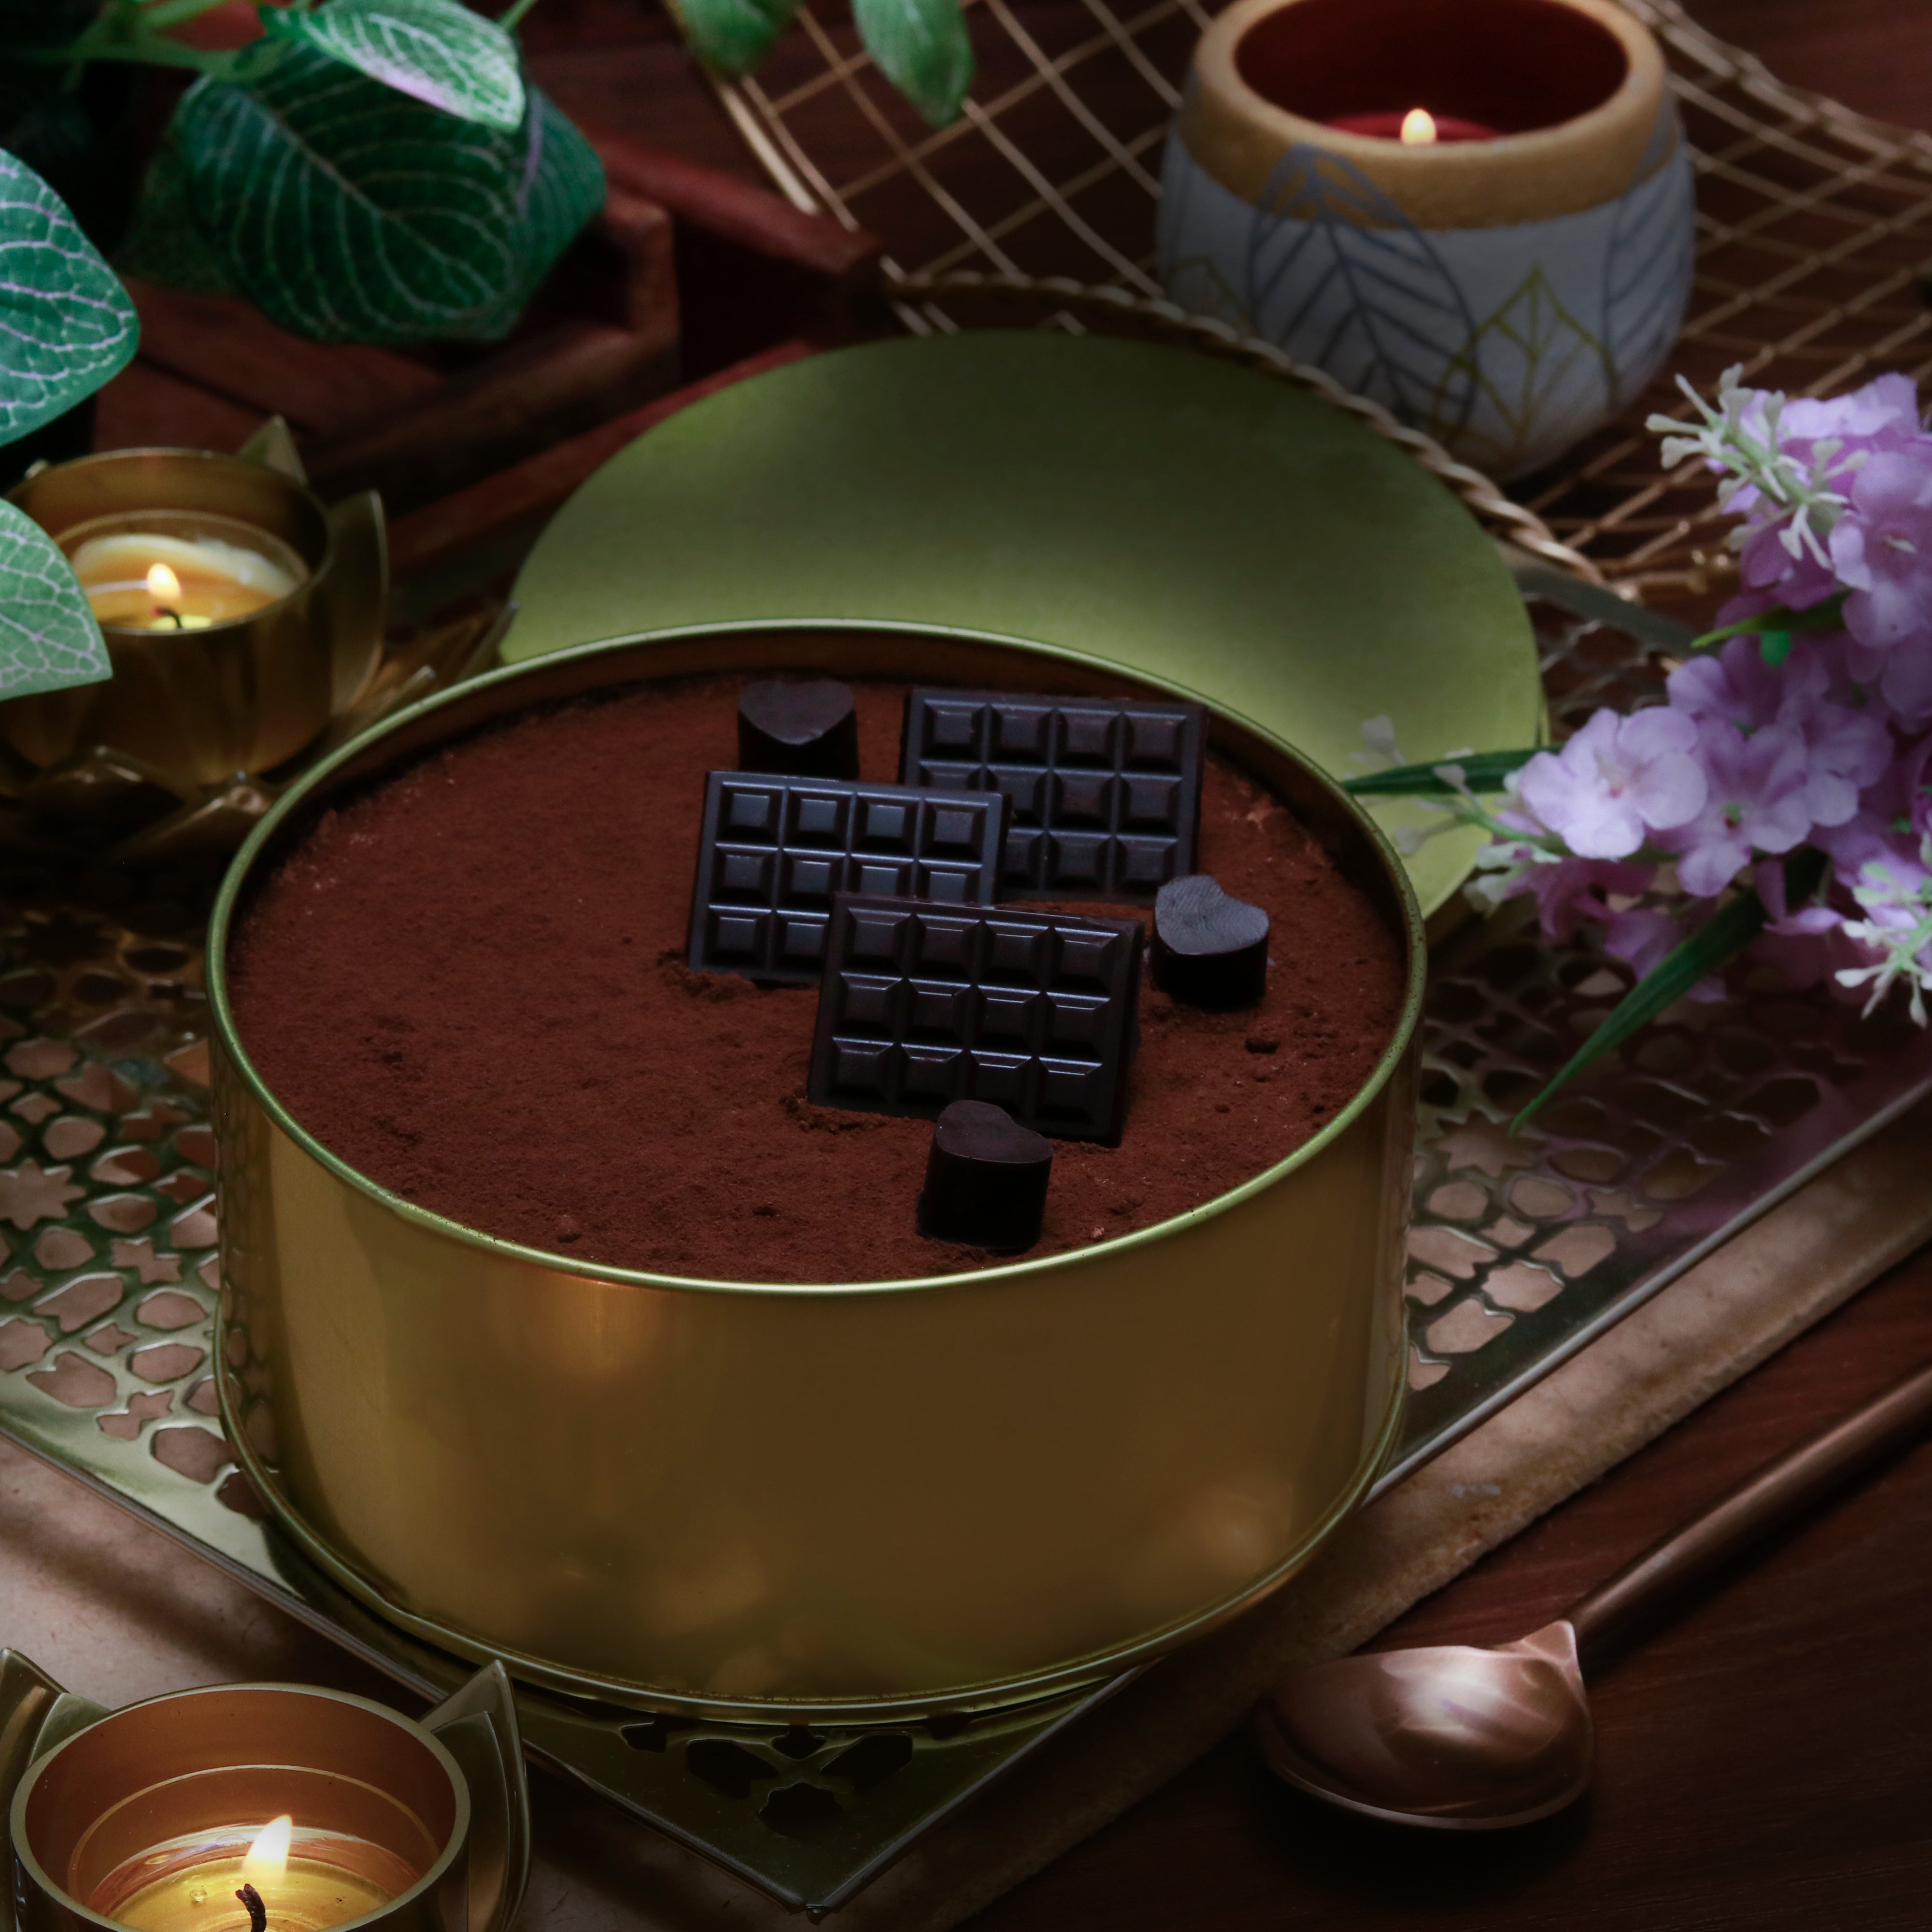 Chocolate Dream Cake | Things we make